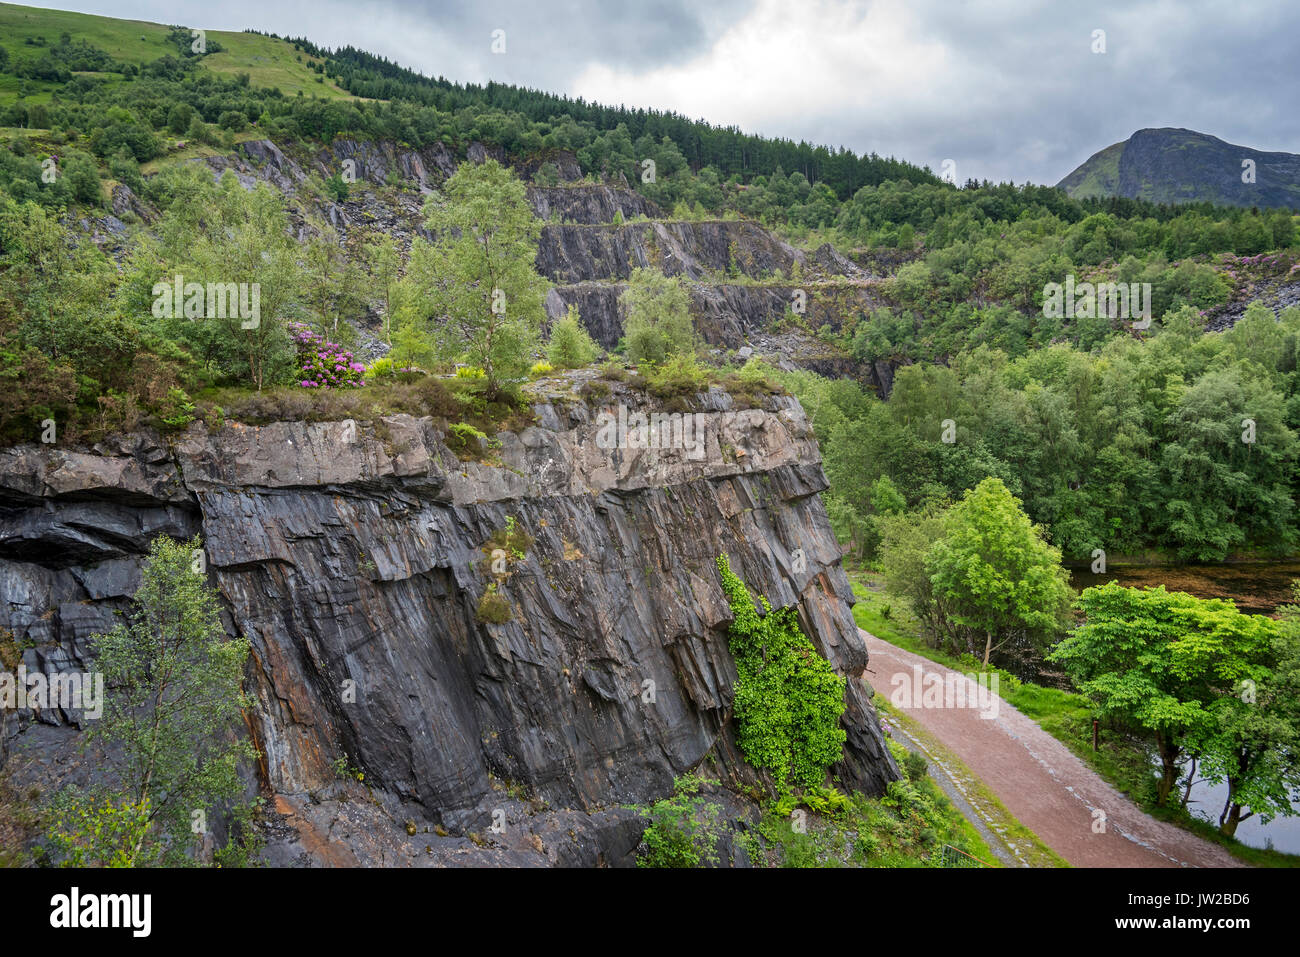 Abandoned Ballachulish slate quarry in Lochaber, Highland, Scotland, UK Stock Photo